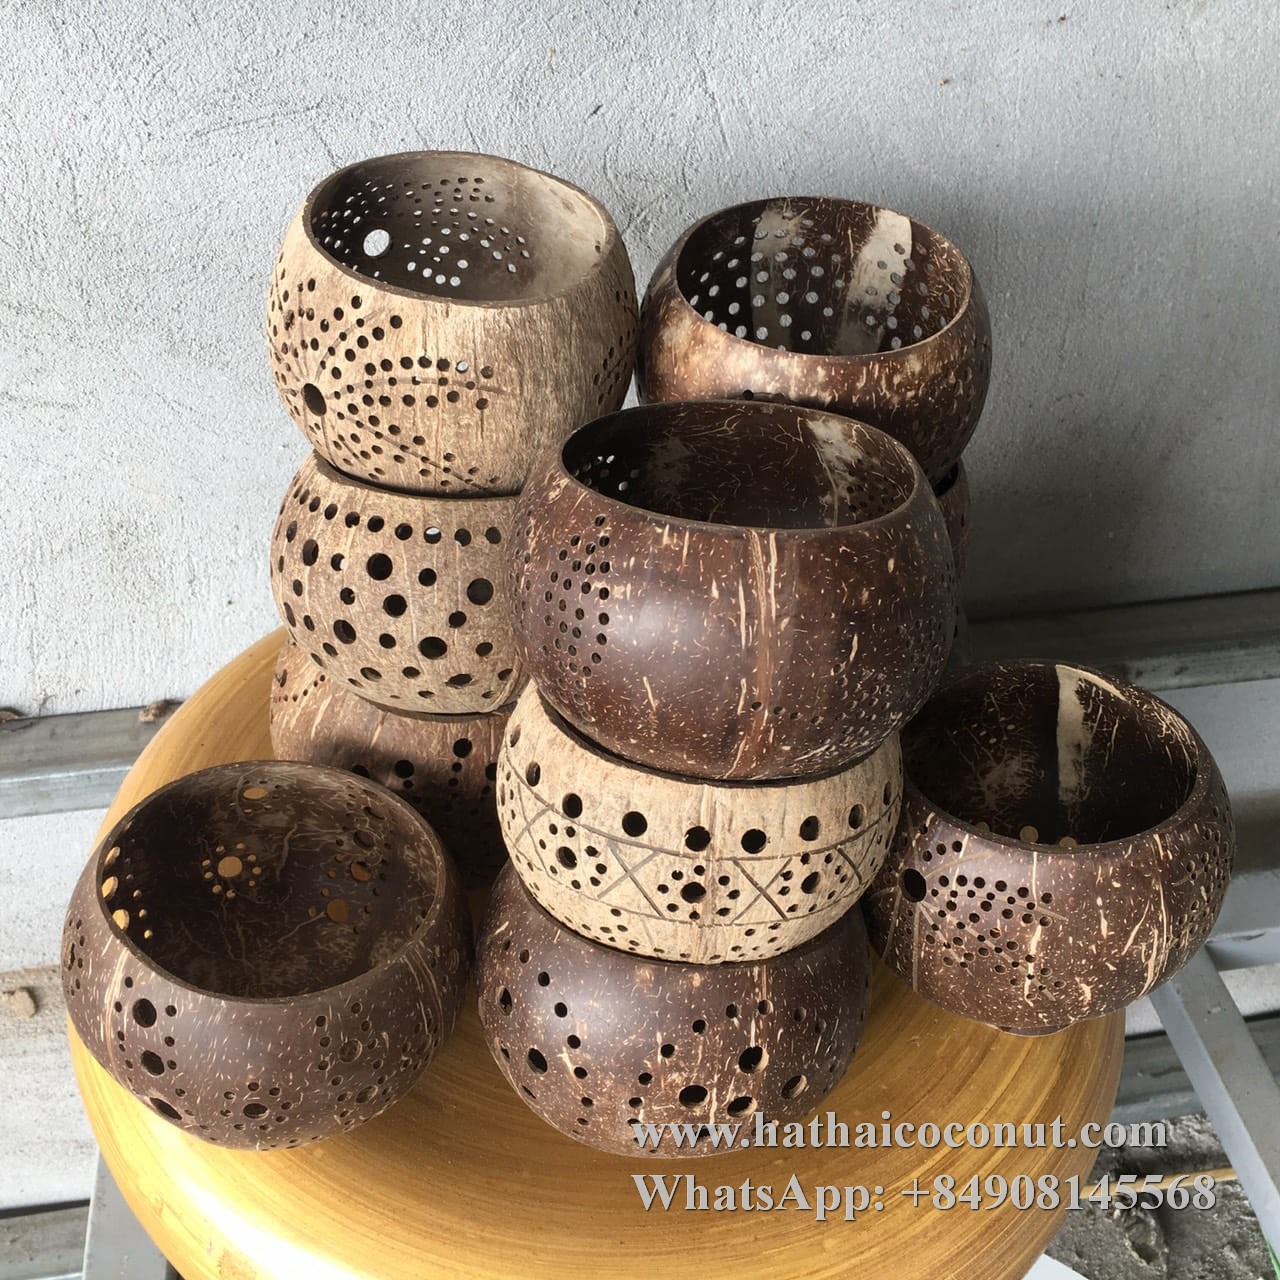 Handcarved coconut tealight holder supplier